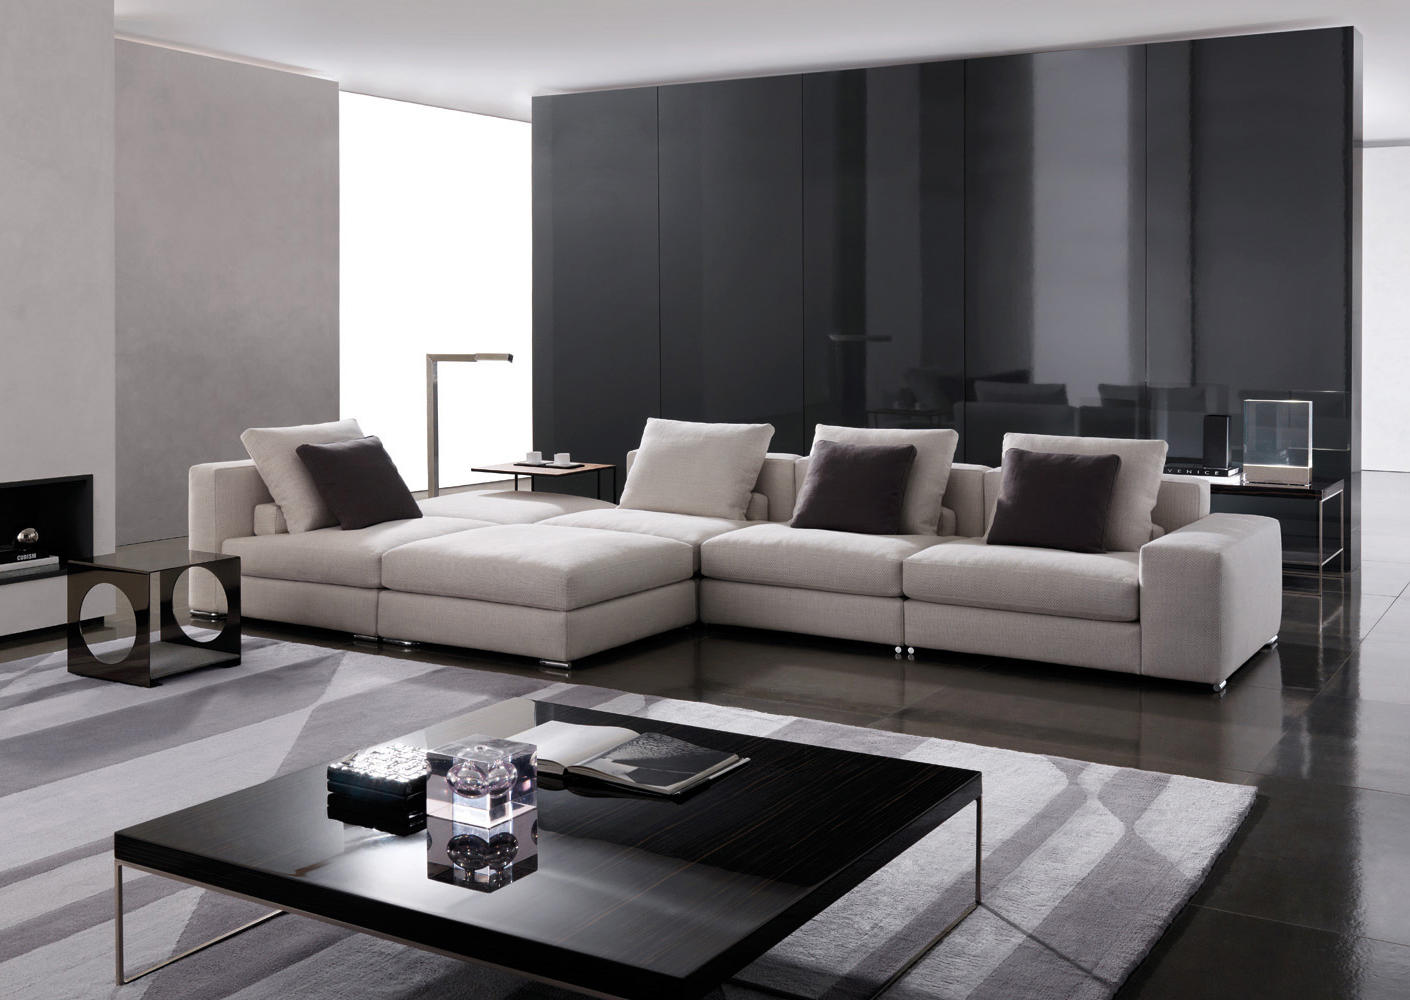 JAGGER - Lounge sofas from Minotti | Architonic